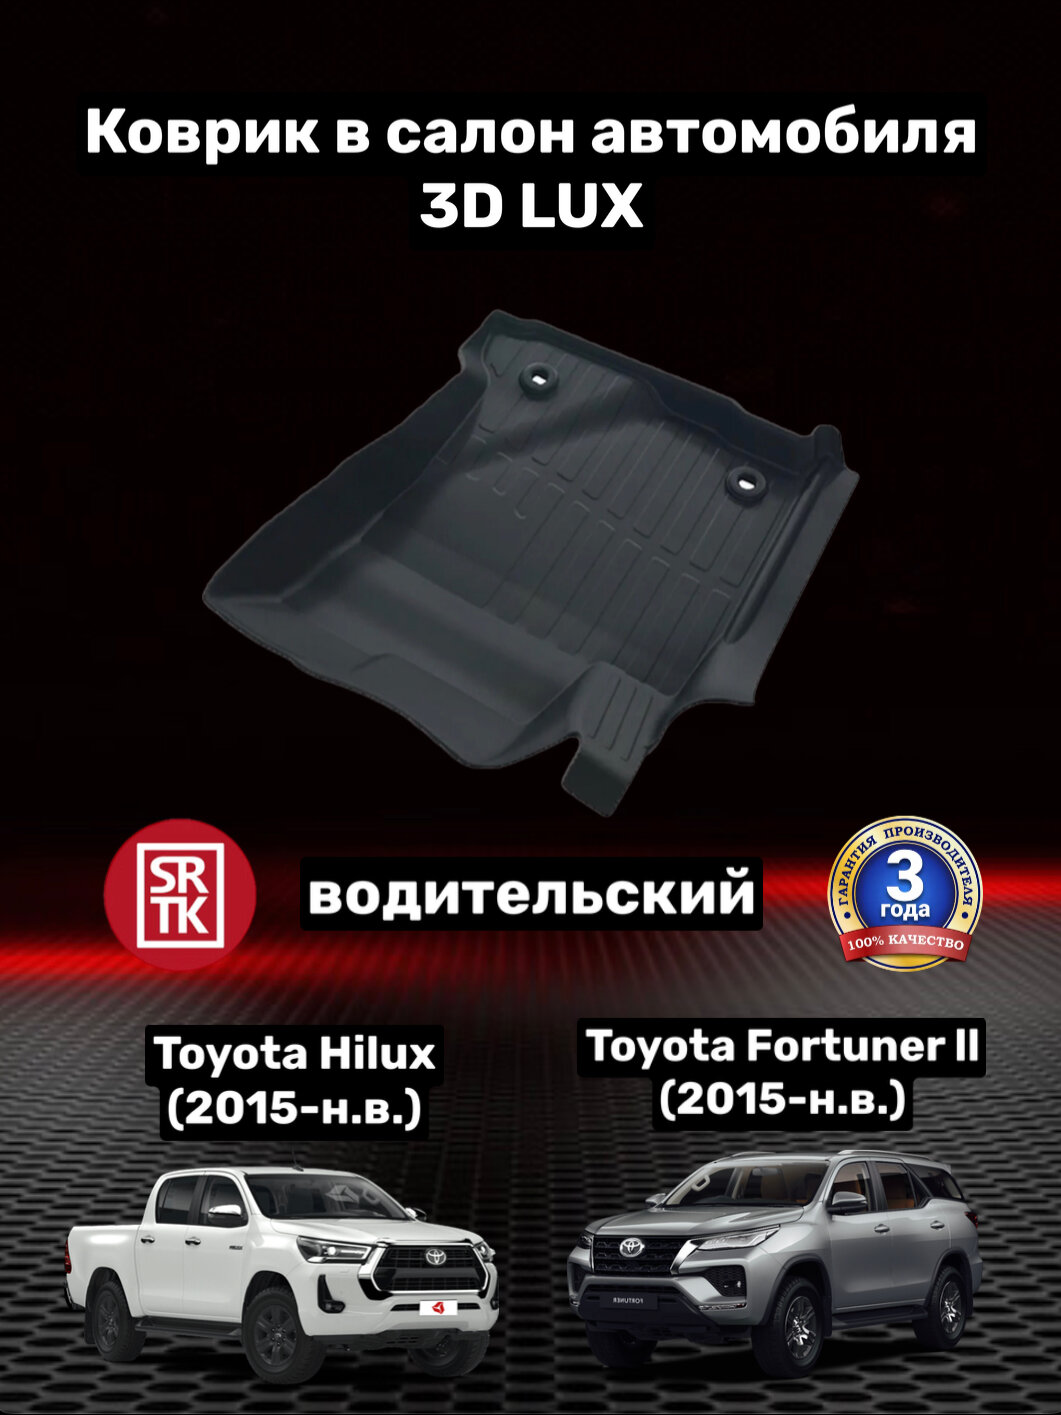 Коврик резиновый для Тойота Фортунер/Тойота Хайлюкс/Toyota Fortuner (2015-)/Toyota Hilux (2015-) 3D LUX SRTK (Саранск) водительский в салон